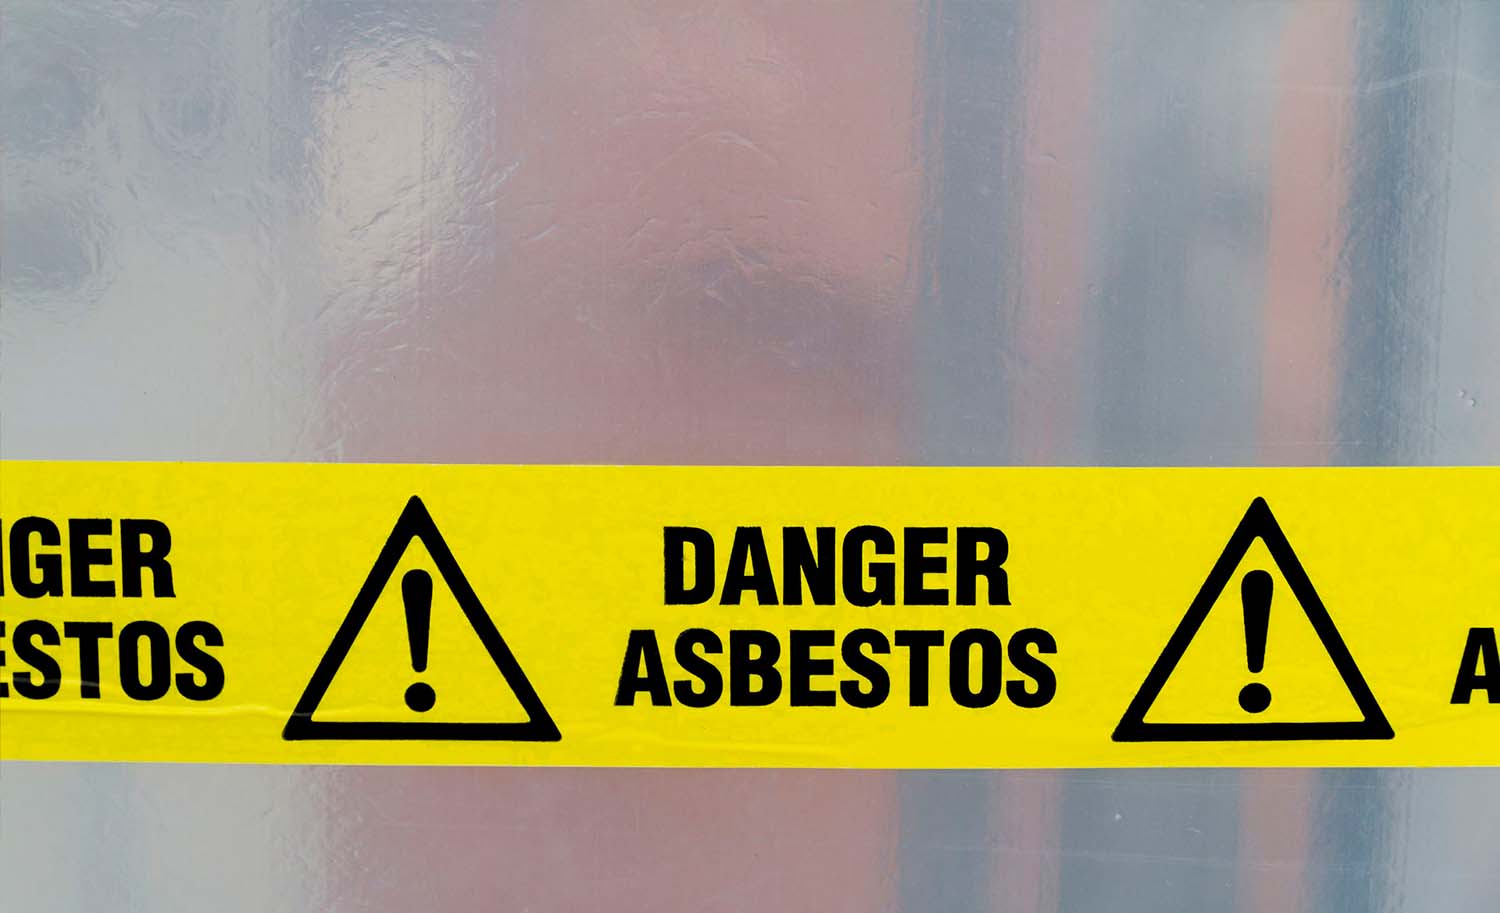 Danger asbestos tape sealing entry.